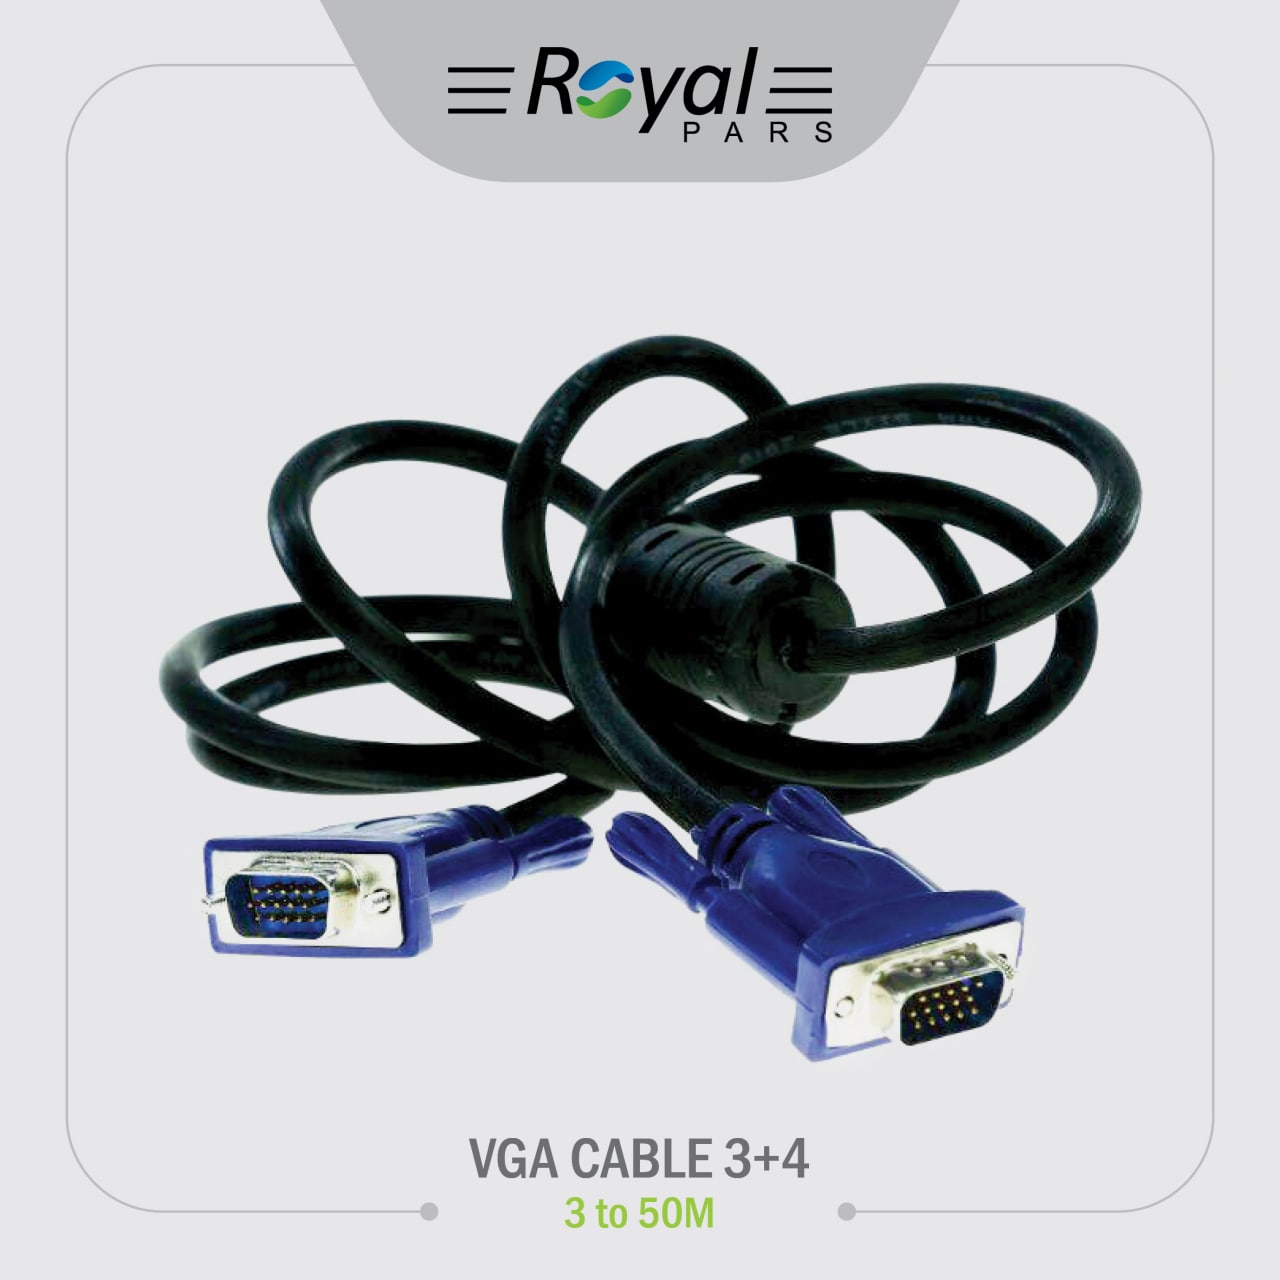 کابل 3VGAمتری نویزگیر دار ضخیم Royal 3+4 Cable